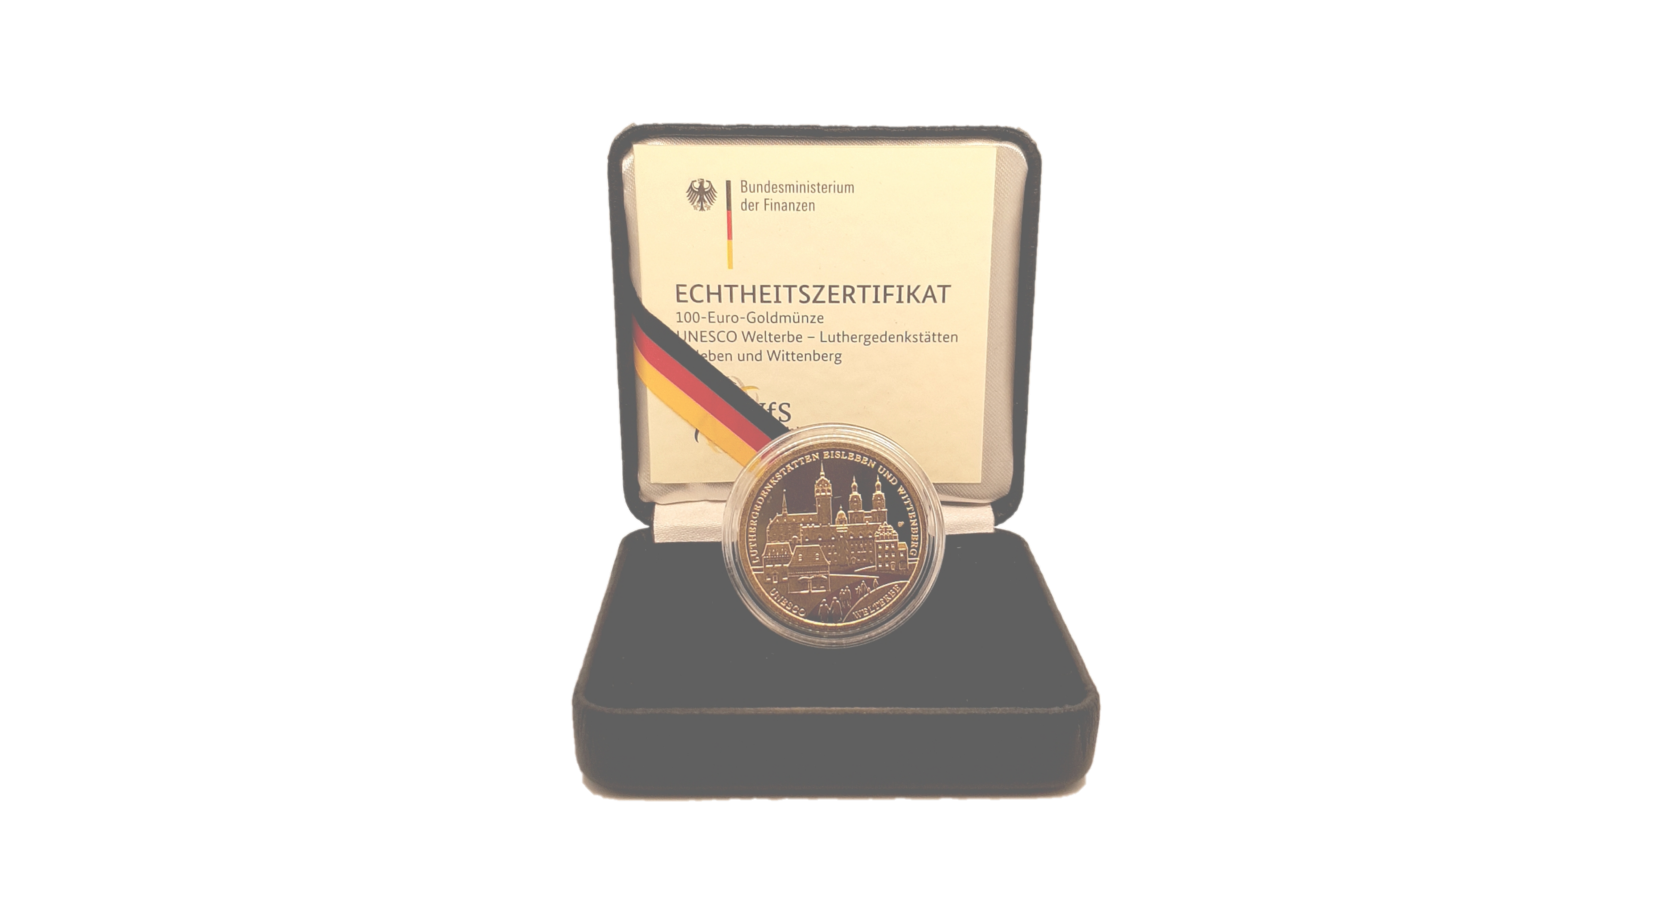 100-Euro-Goldmünze 2017 "Luthergedenkstätten in Eisleben und Wittenberg"